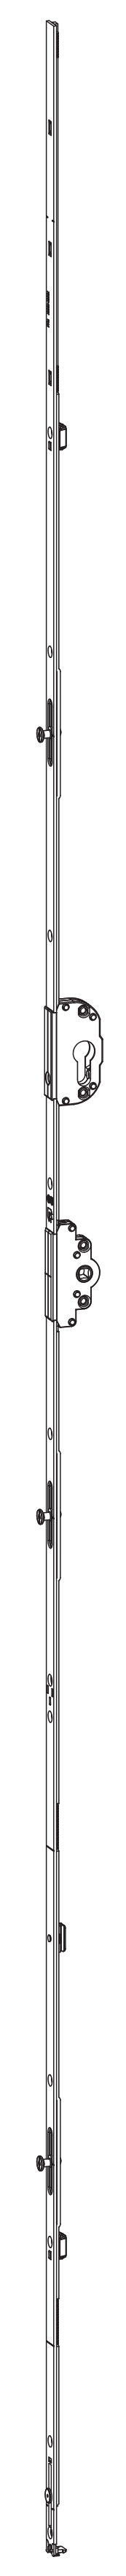 GU-ITALIA -  Cremonese UNI-JET anta ribalta altezza maniglia fissa con foro cilindro sopra la maniglia e quadro - gr / dim. 2190 - entrata 45 - alt. man. 950 - lbb/hbb 2101 - 2350